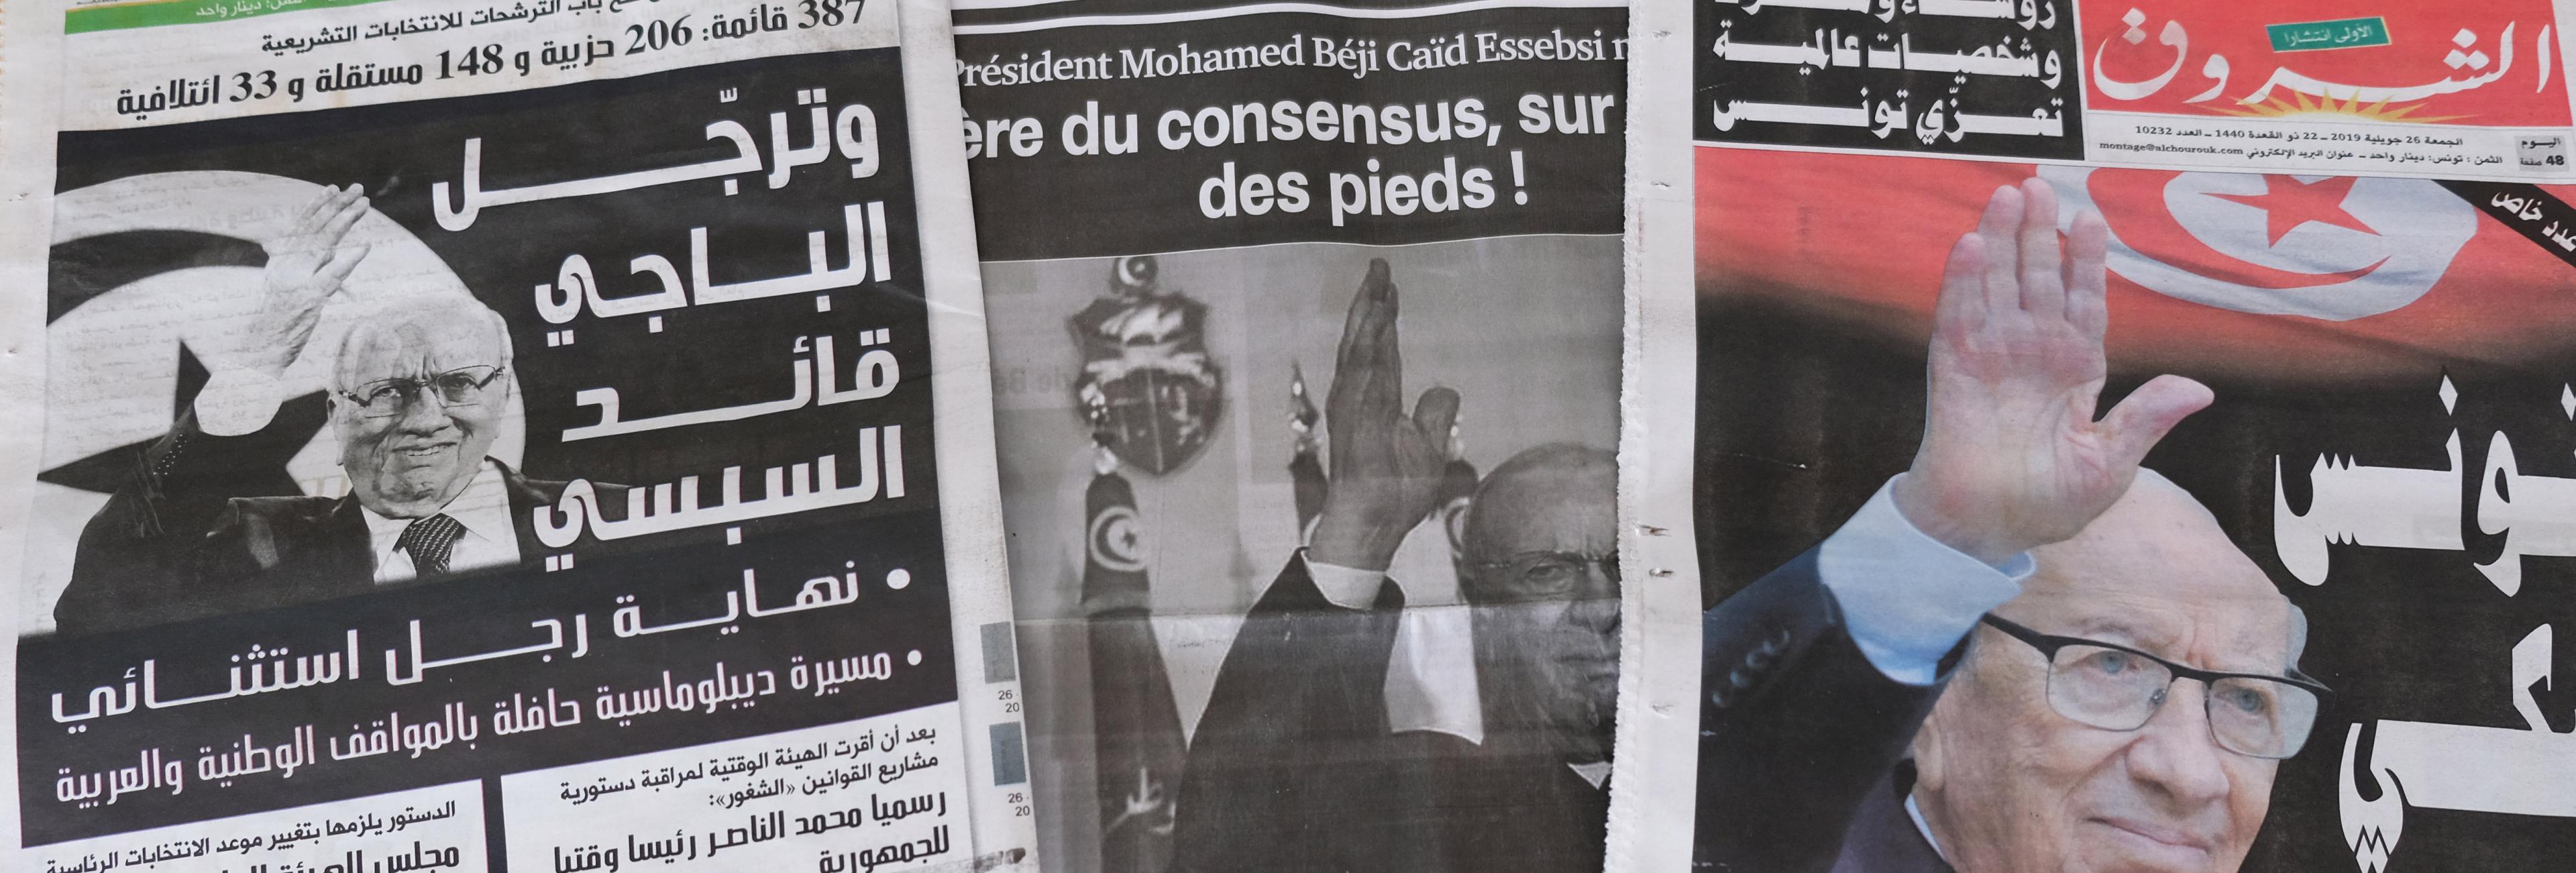 Titel französischsprachiger und arabischsprachiger Zeitungen mit dem Bild von Präsident Beji Caid Essebsi